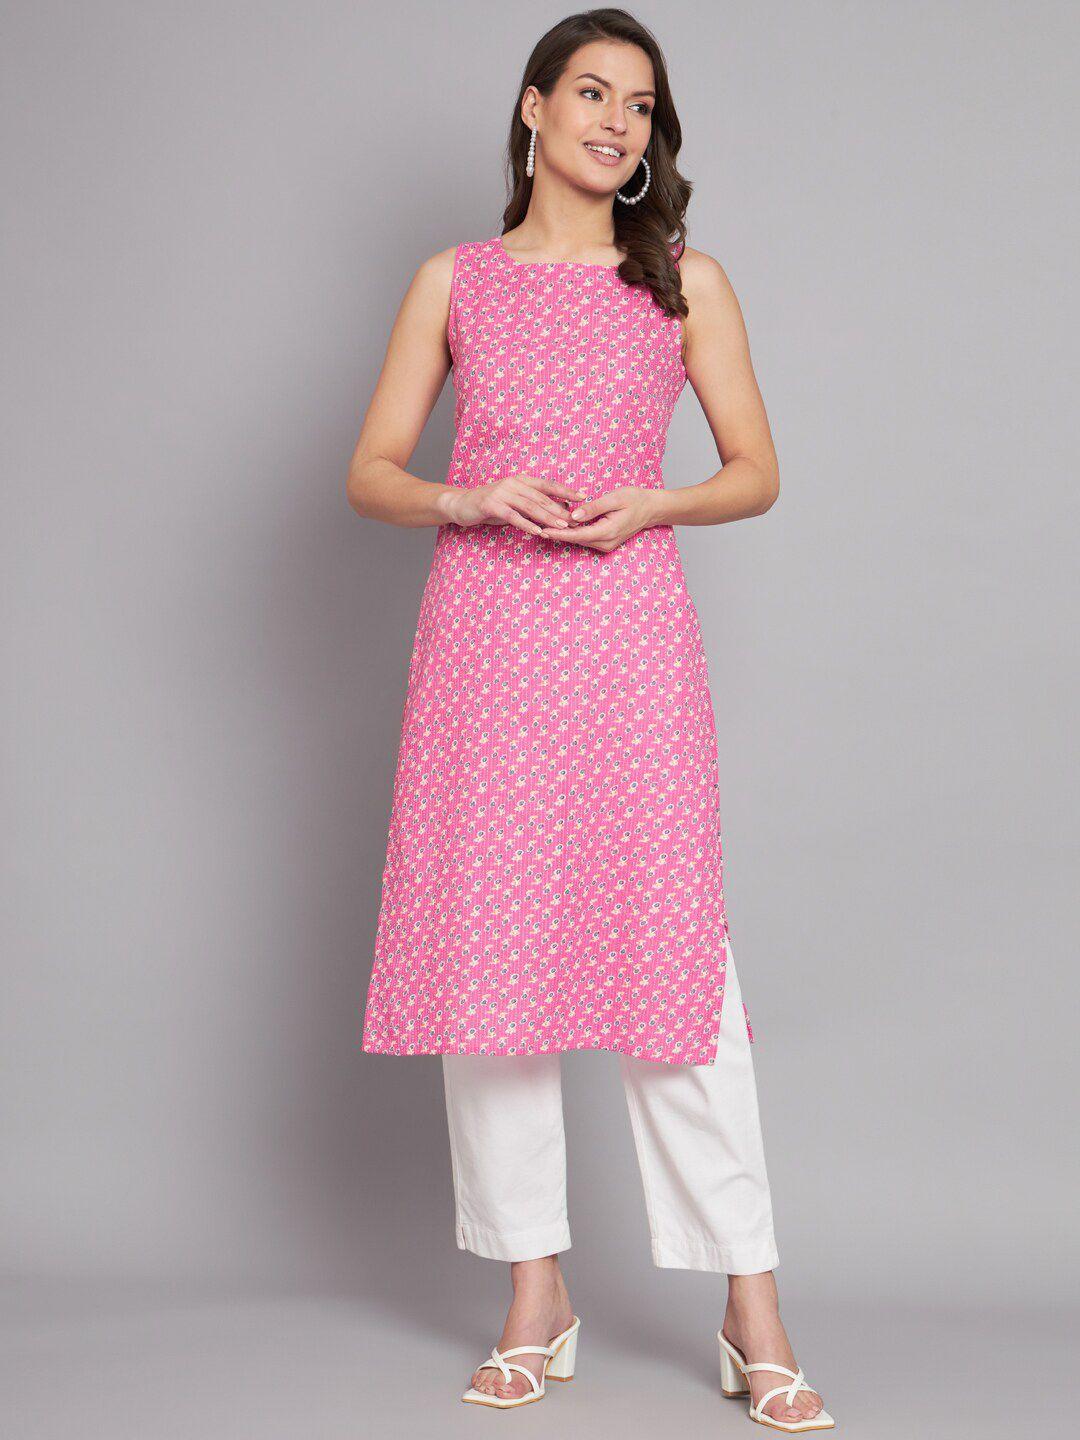 kalini abstract printed sleeveless pure cotton straight kurta